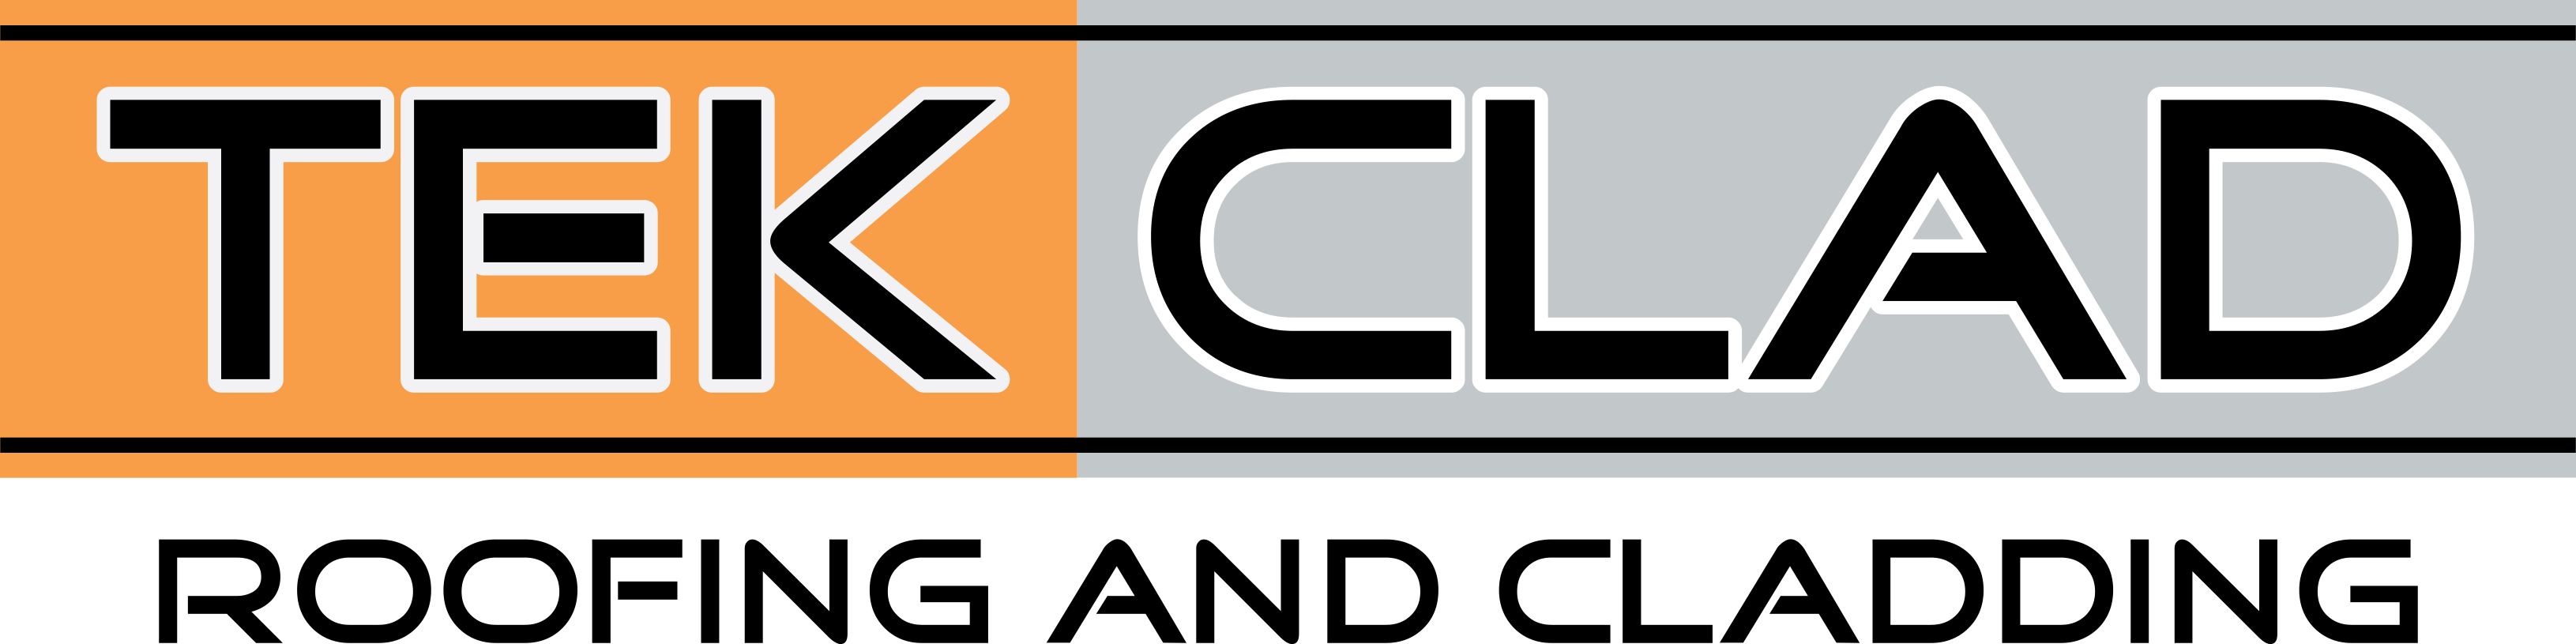 Tekclad-logo (1)